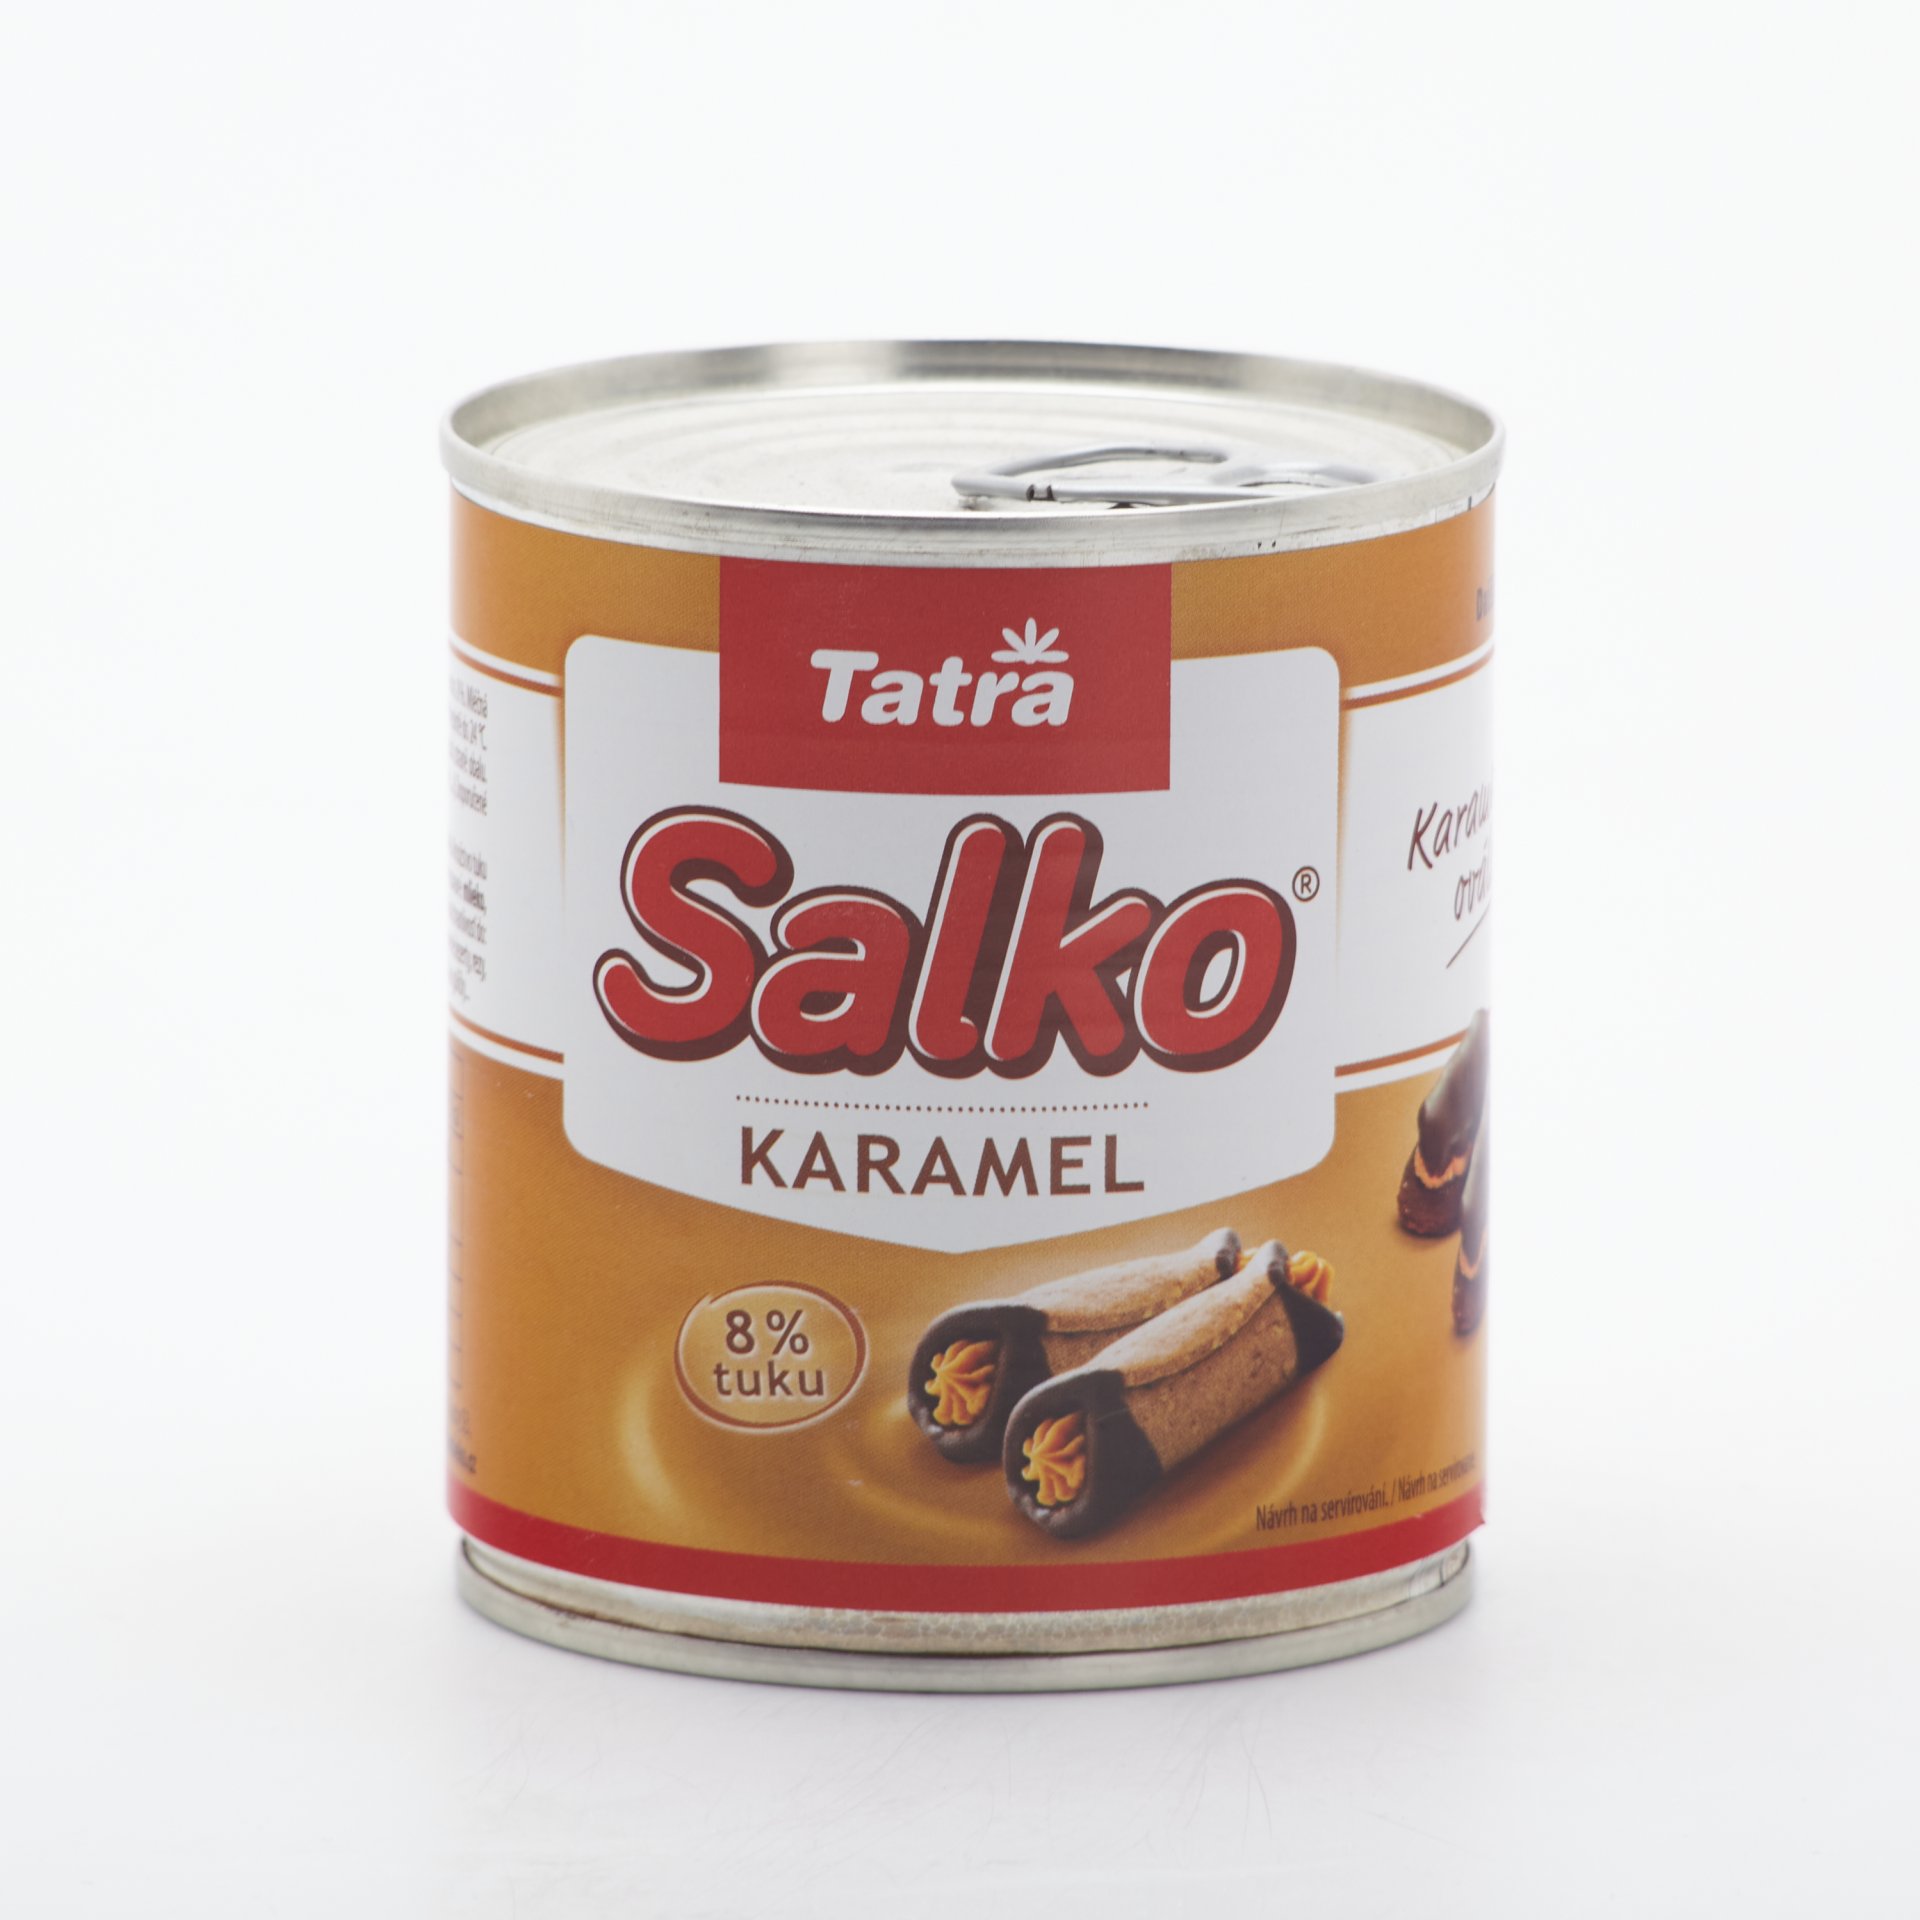 Tatra salko karamelové 397g